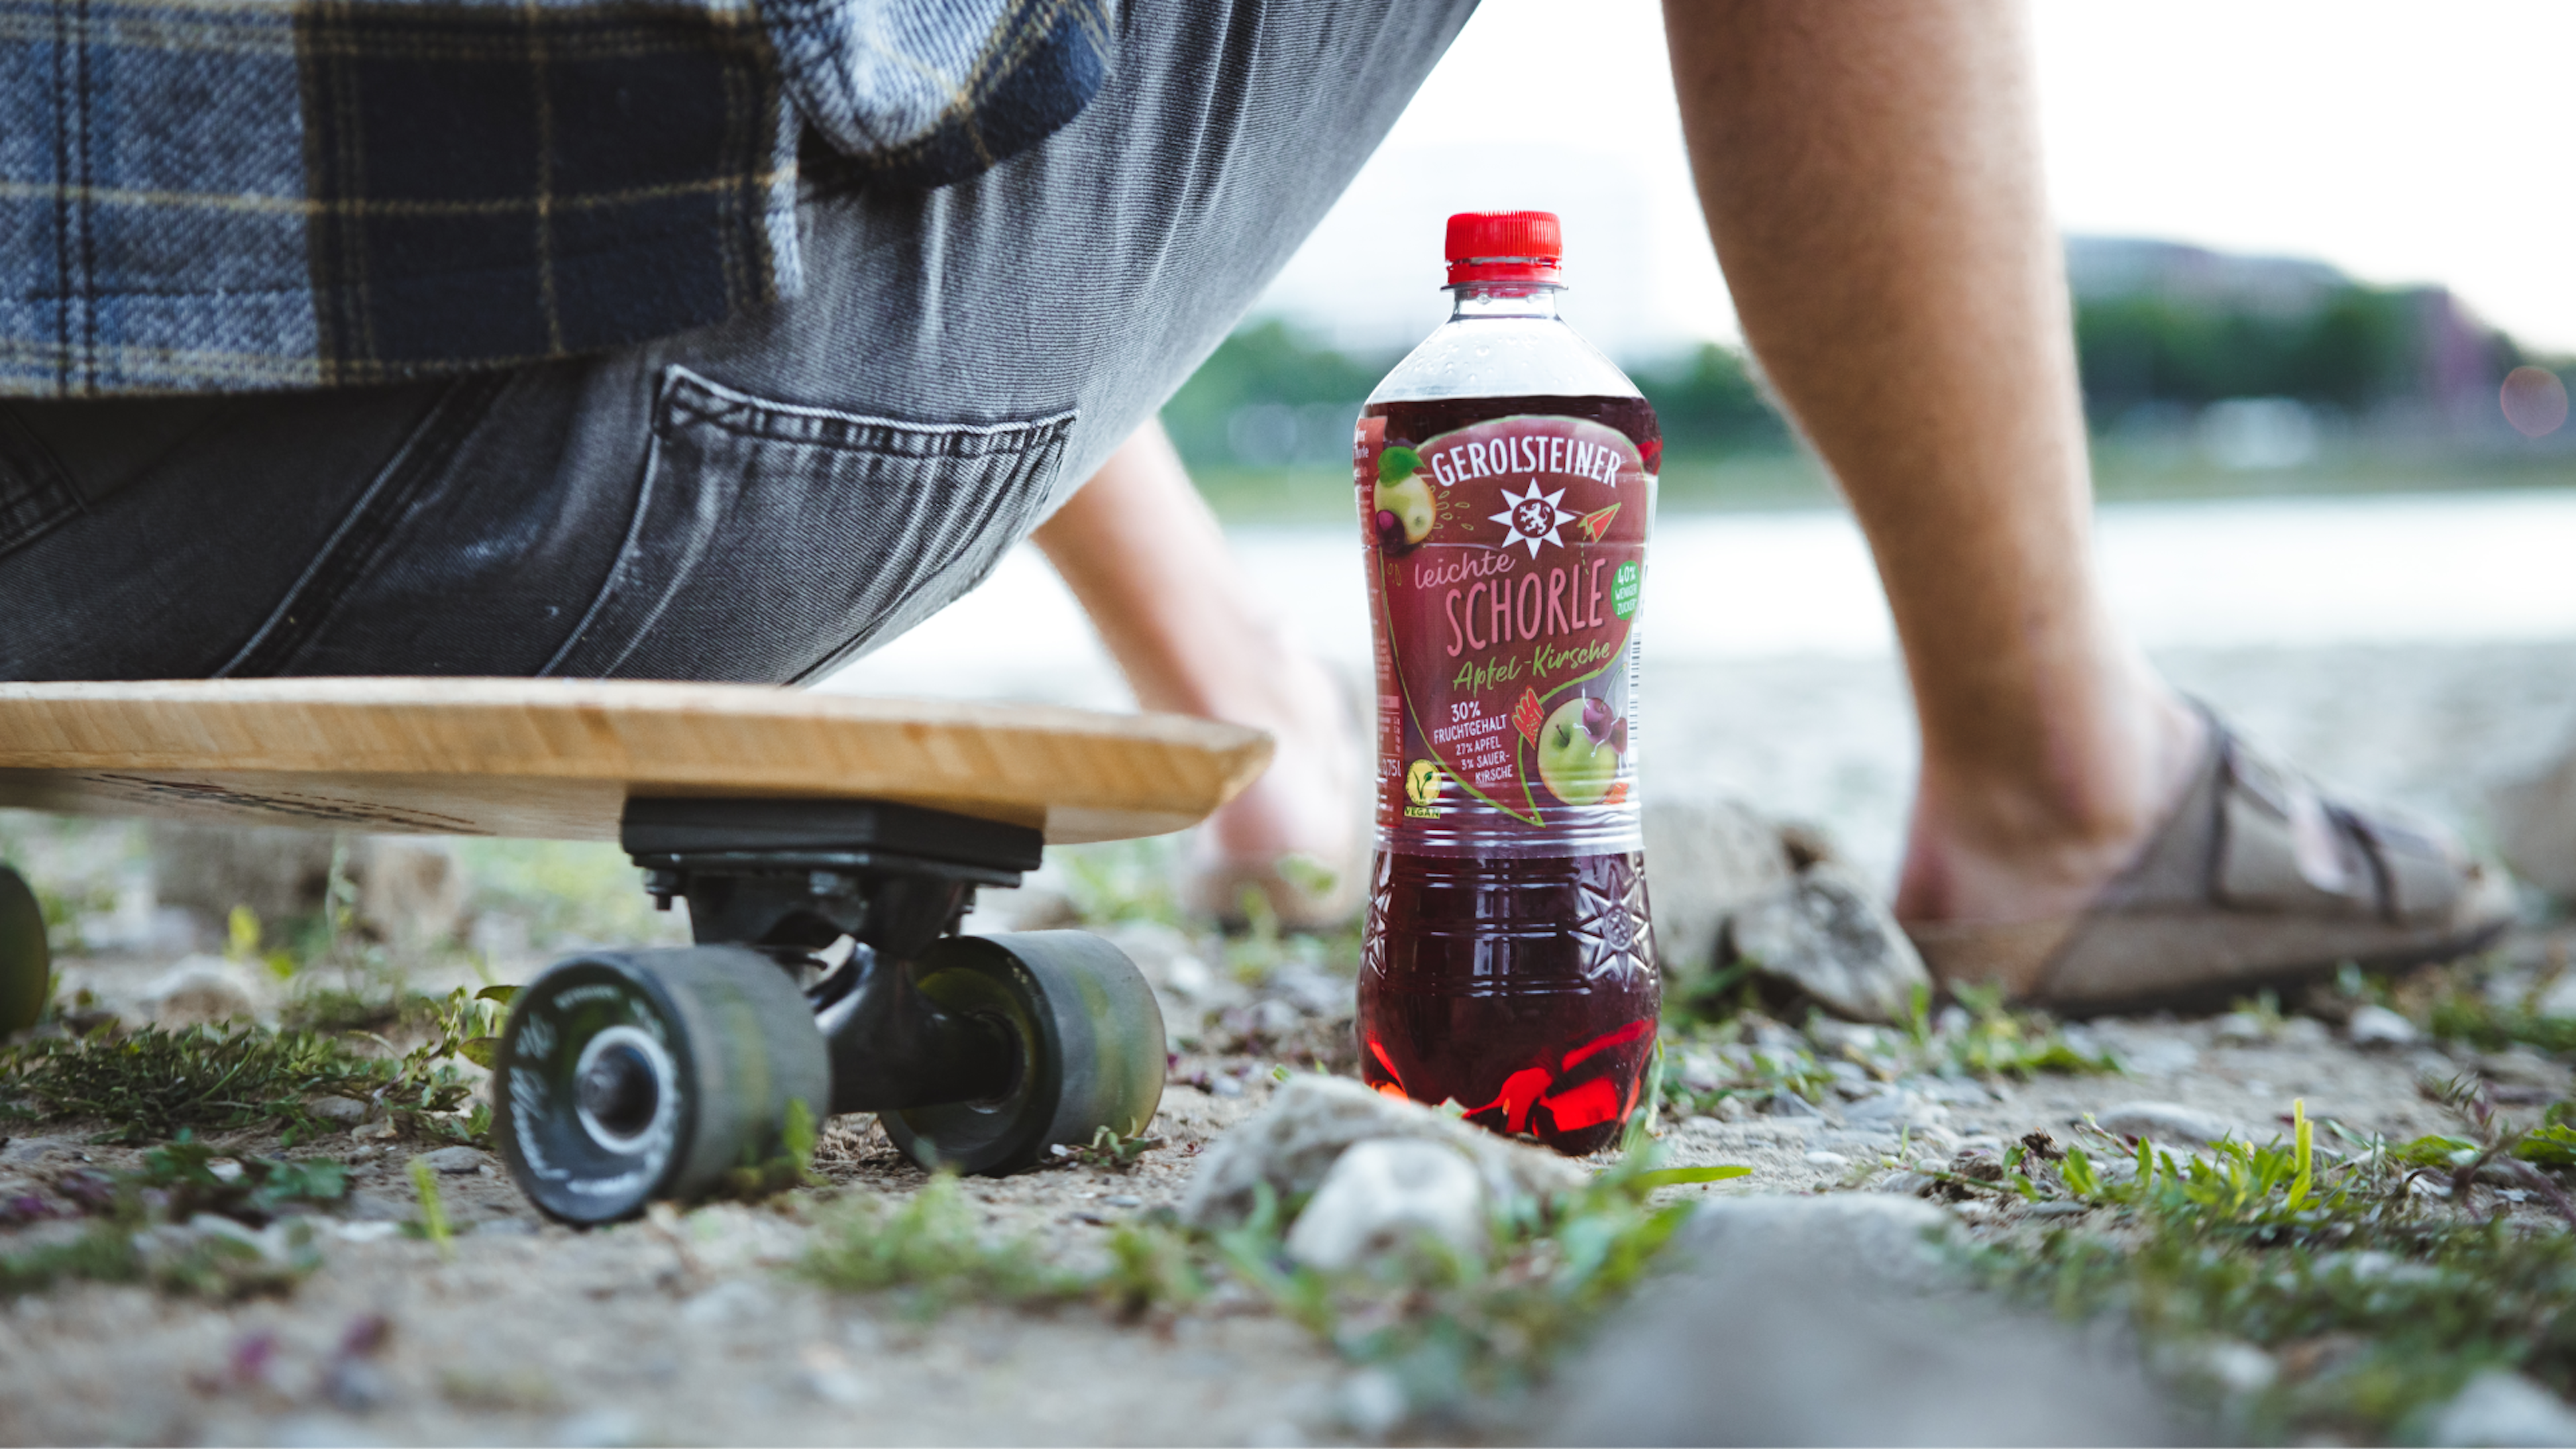 Eine nahe Bodenaufnahme einer Flasche Apfel-Kirsch-Schorle neben einem Skateboard und Füßen eines Skateboarders.